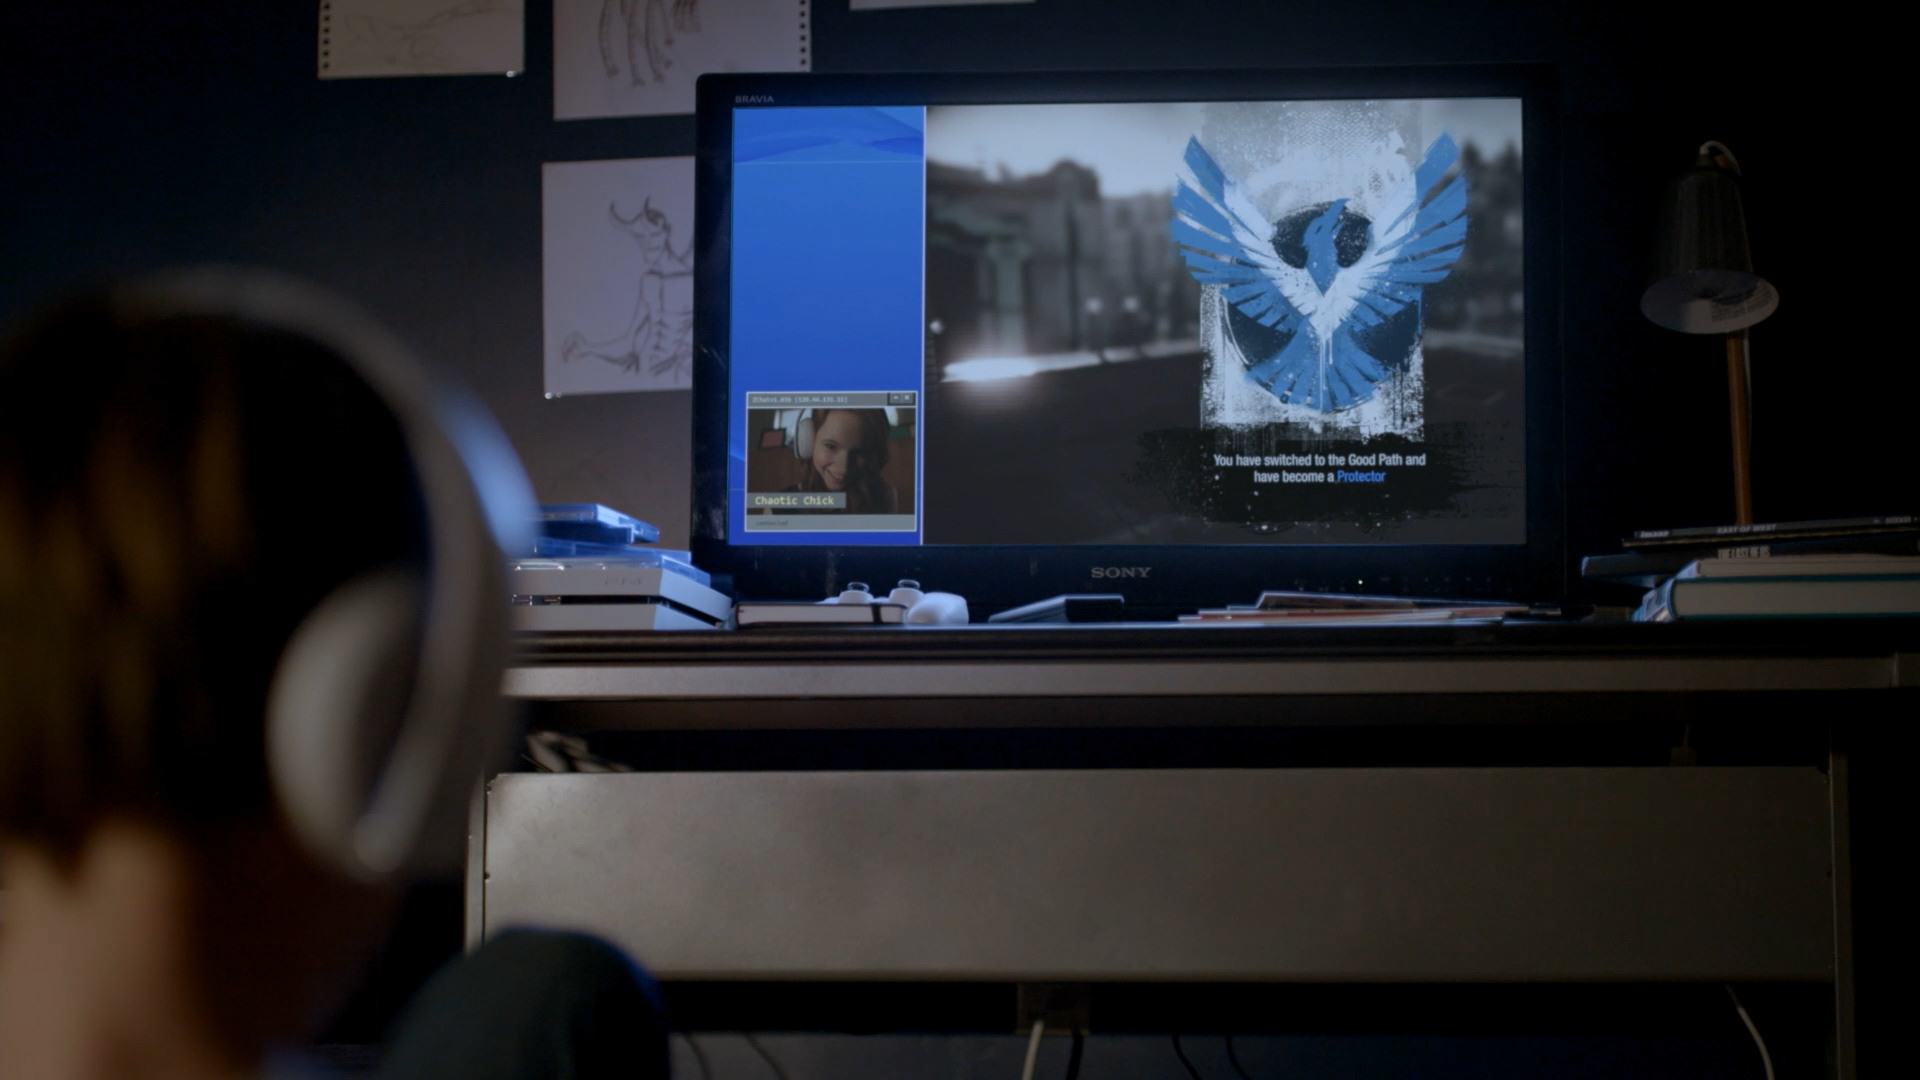 قابلیت چت ویدیویی هنگام بازی، نشان داده شده در سریال Powers